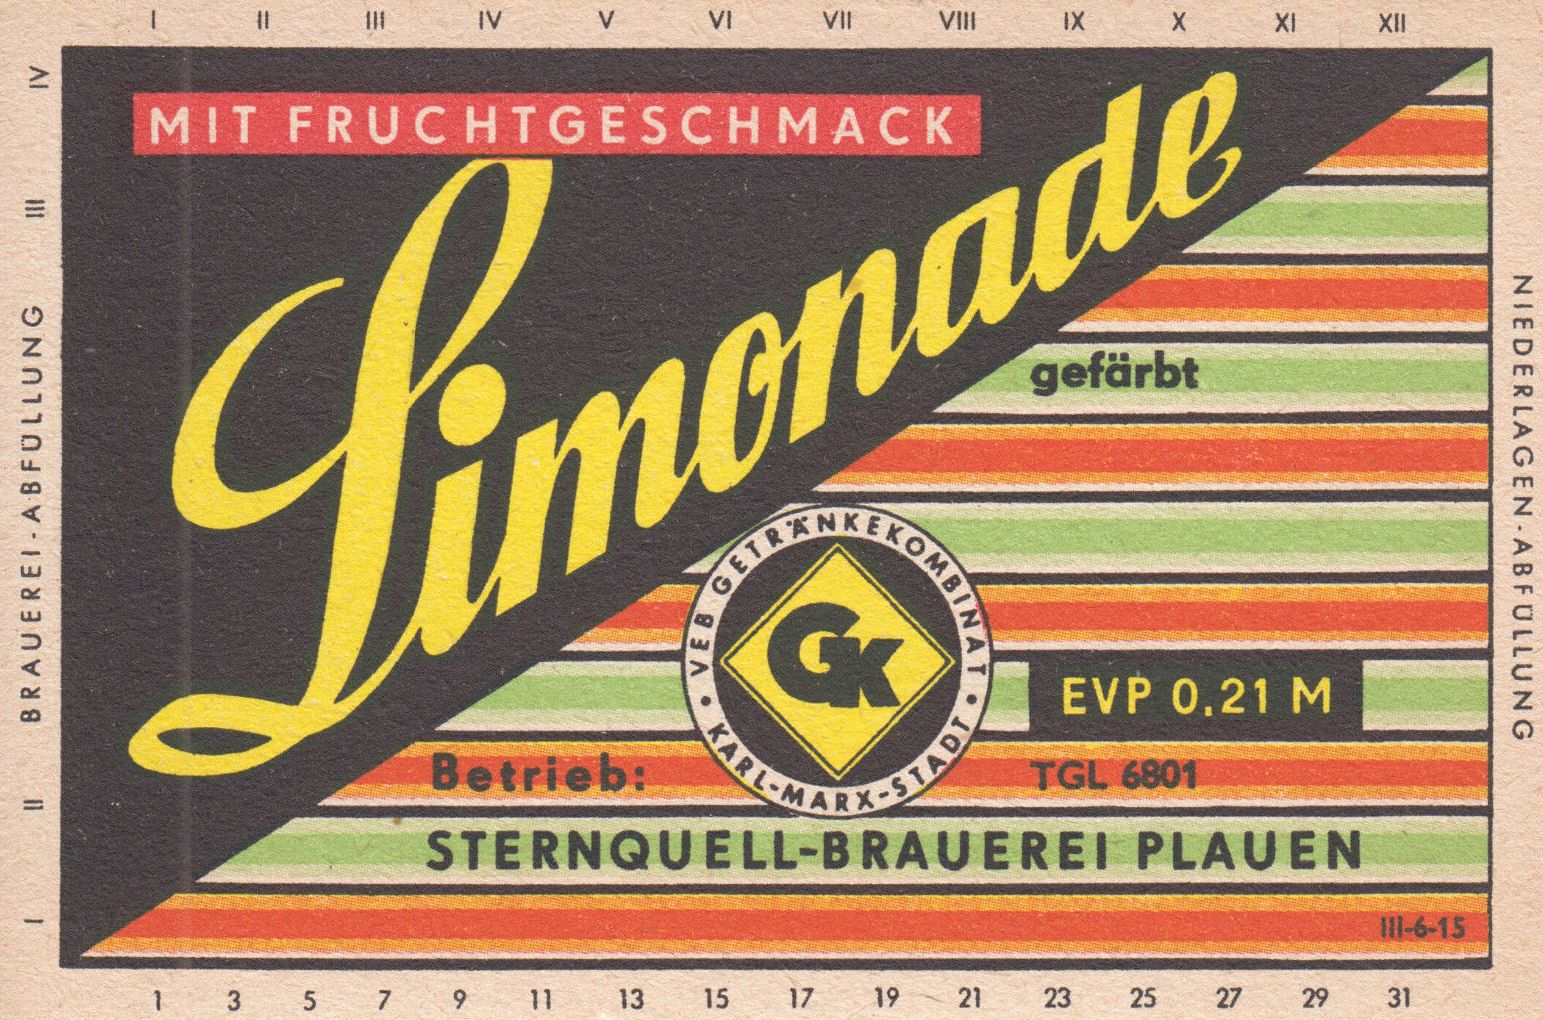 Limonade mit Fruchtgeschmack, Sternquell-Brauerei Plauen (Bild: historisches Etikett)